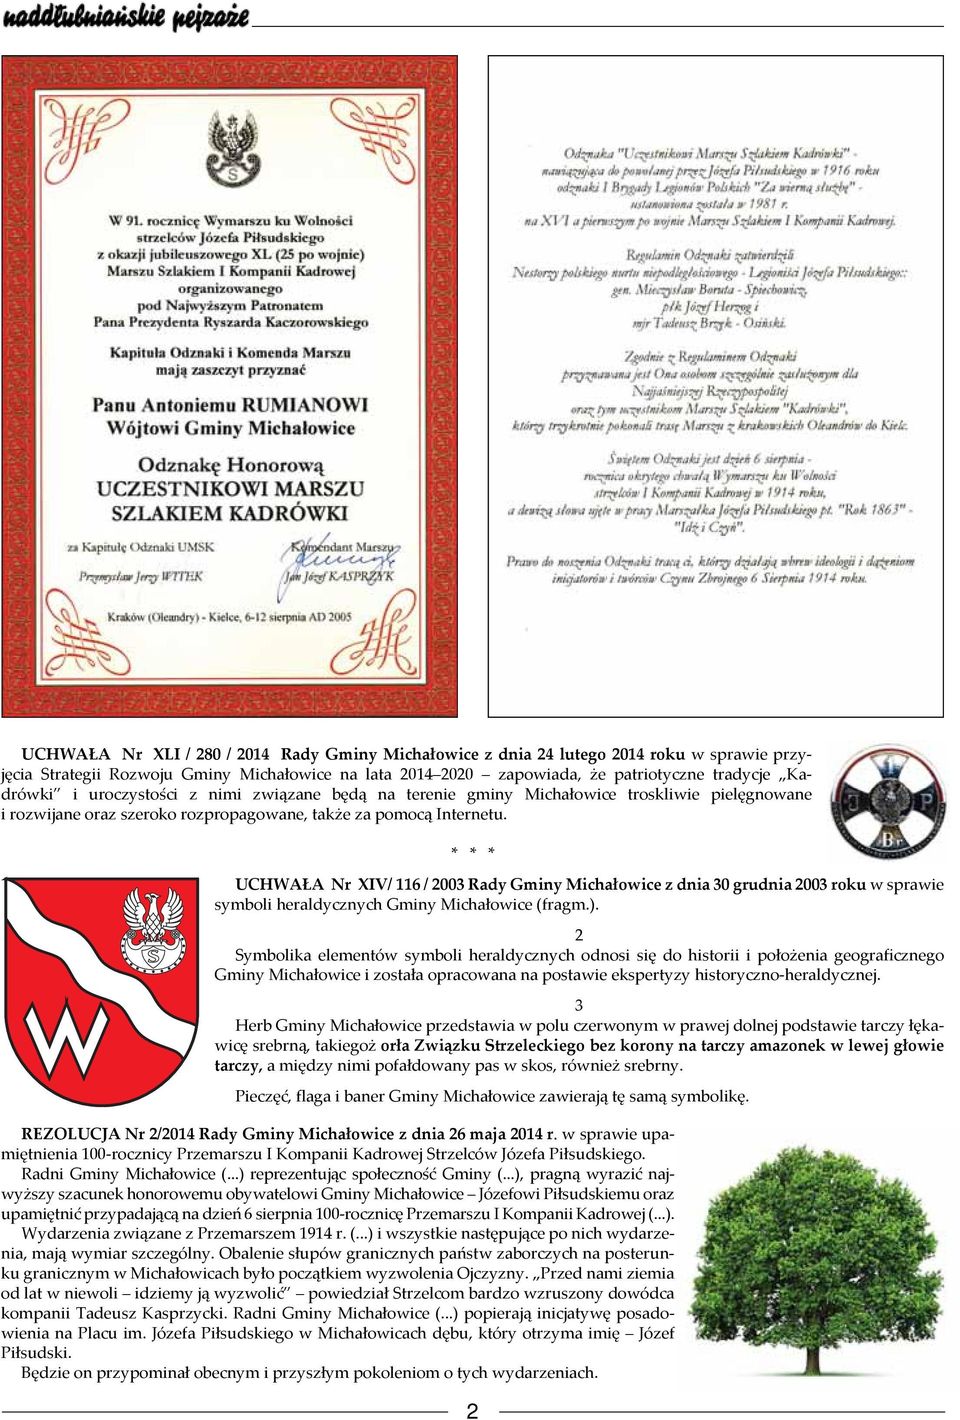 * * * UCHWAŁA Nr XIV/ 116 / 2003 Rady Gminy Michałowice z dnia 30 grudnia 2003 roku w sprawie symboli heraldycznych Gminy Michałowice (fragm.).